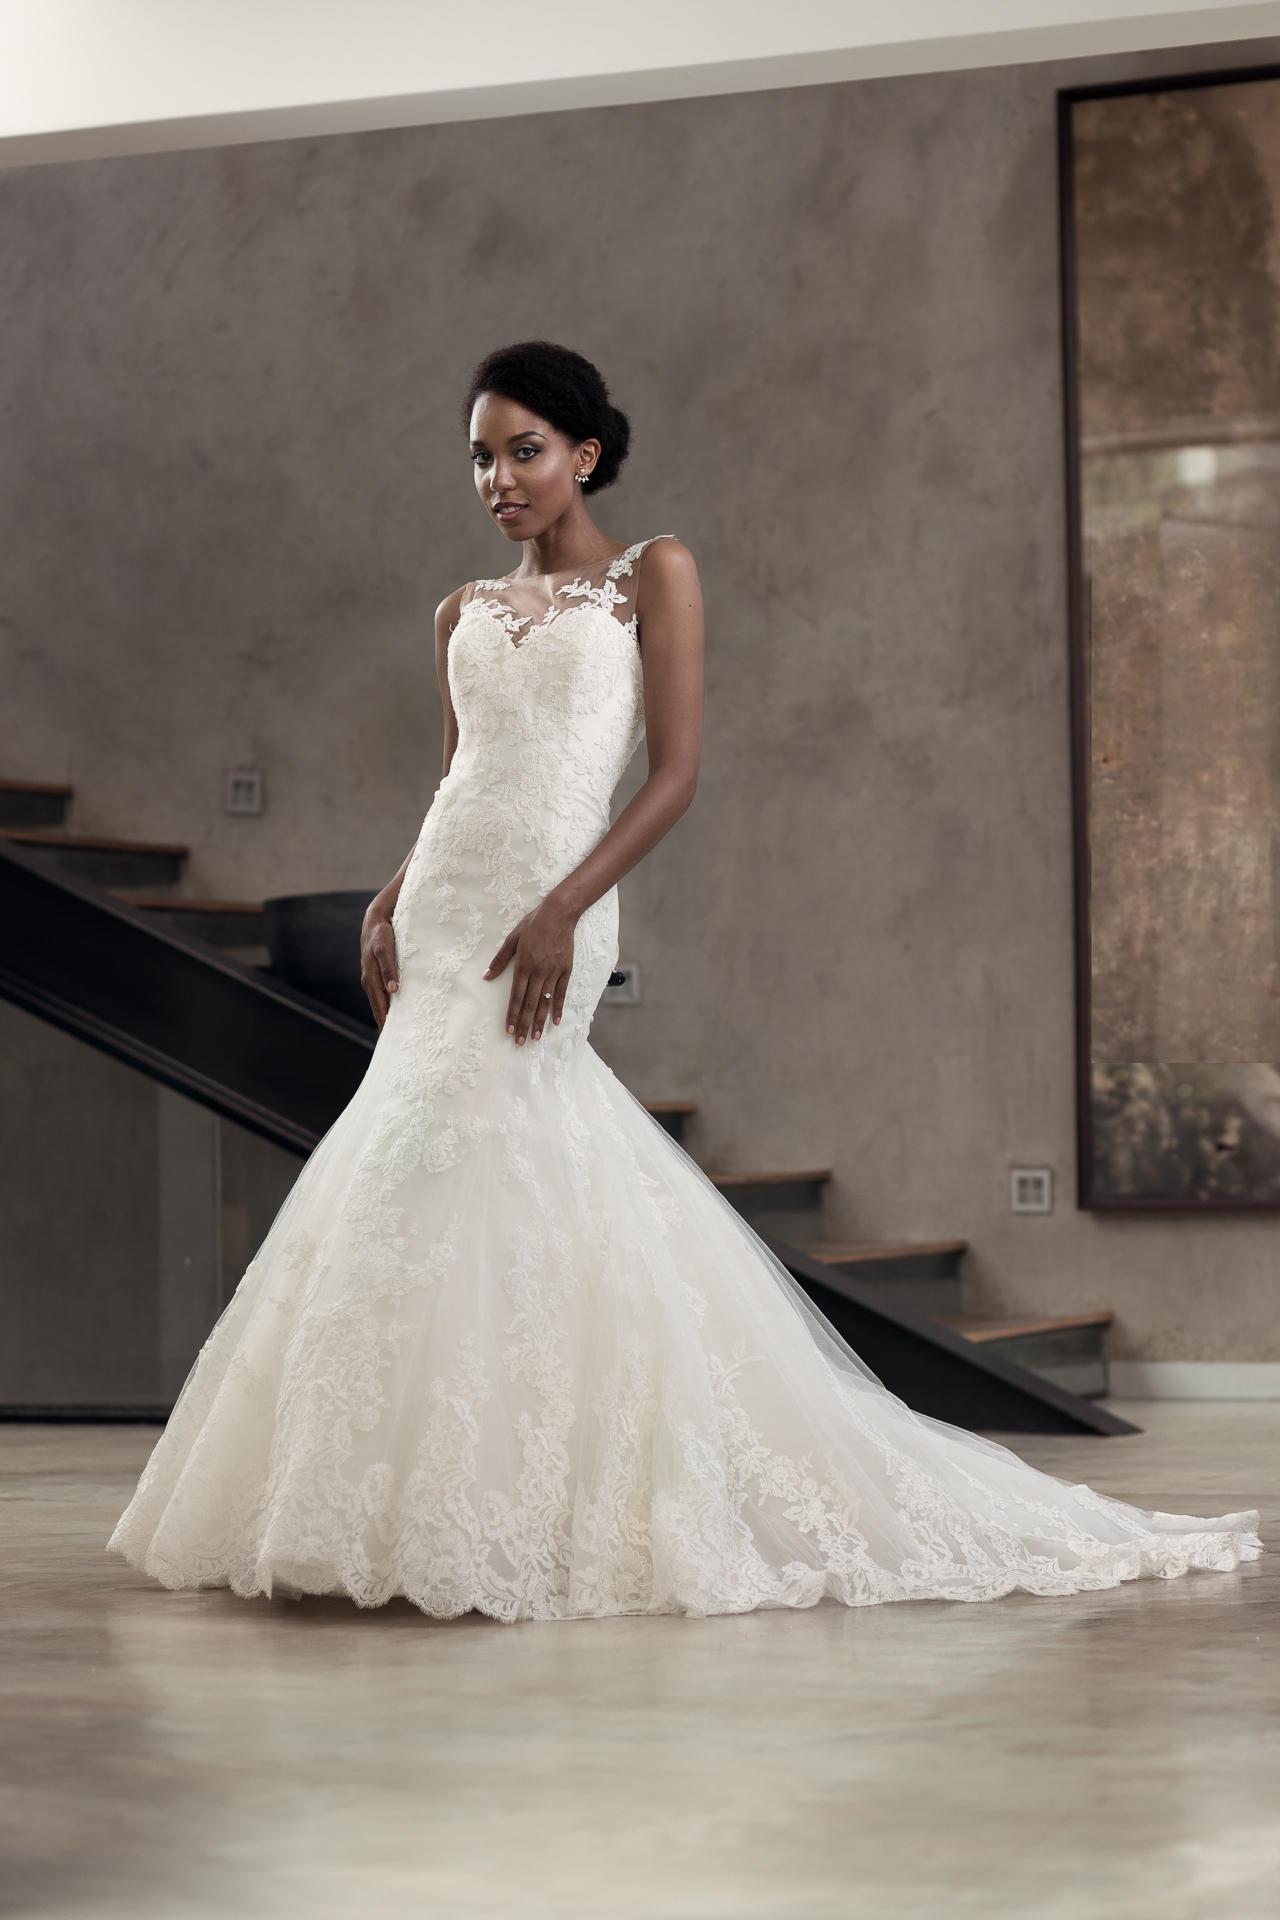 Blog — Johannesburg Wedding and Commercial Photographer | Sheldon Evans ...